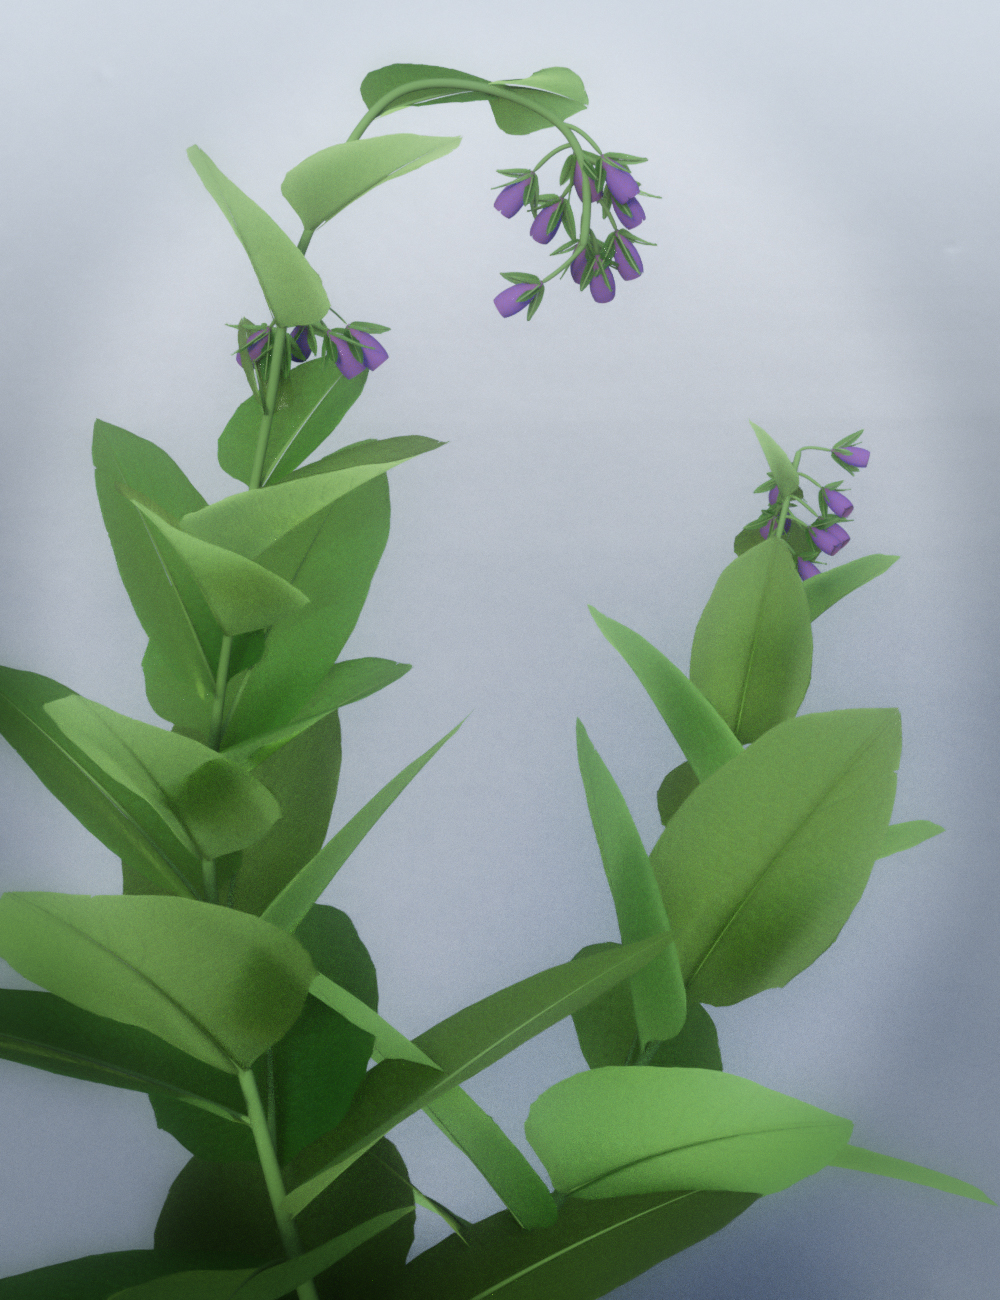 Wild Flower Plants vol 3 by: MartinJFrost, 3D Models by Daz 3D